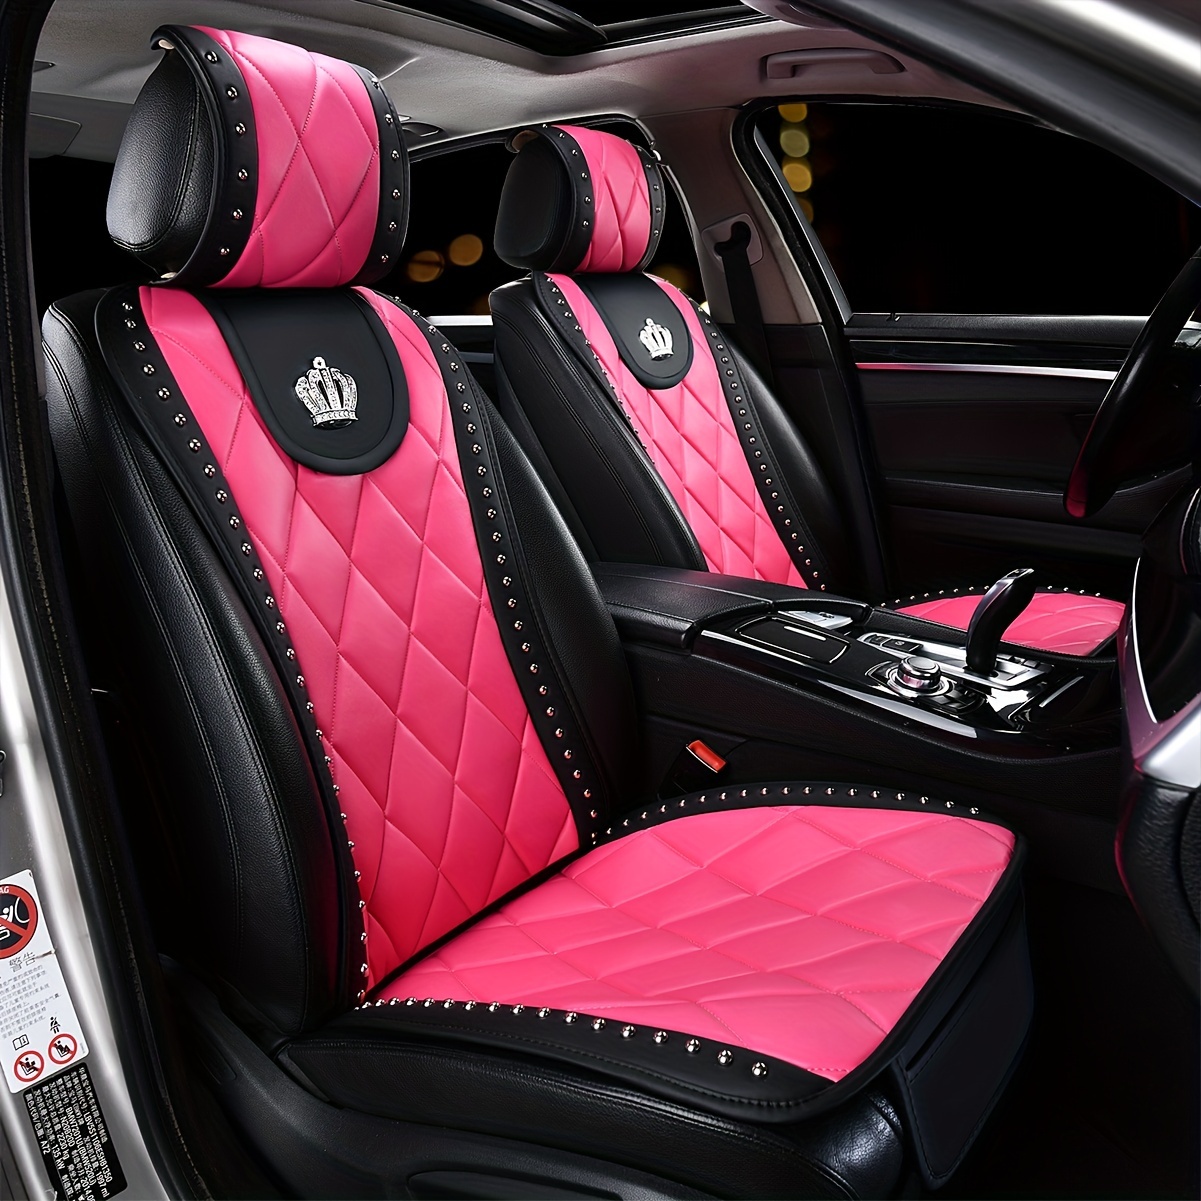  KAPTAS Funda de asiento de automóvil compatible con Seat Ibiza  Leon Tarraco Toledo 5 asientos, cojín de asiento de automóvil  personalizado, cojín de gamuza transpirable (color rosa, tamaño: León) :  Automotriz